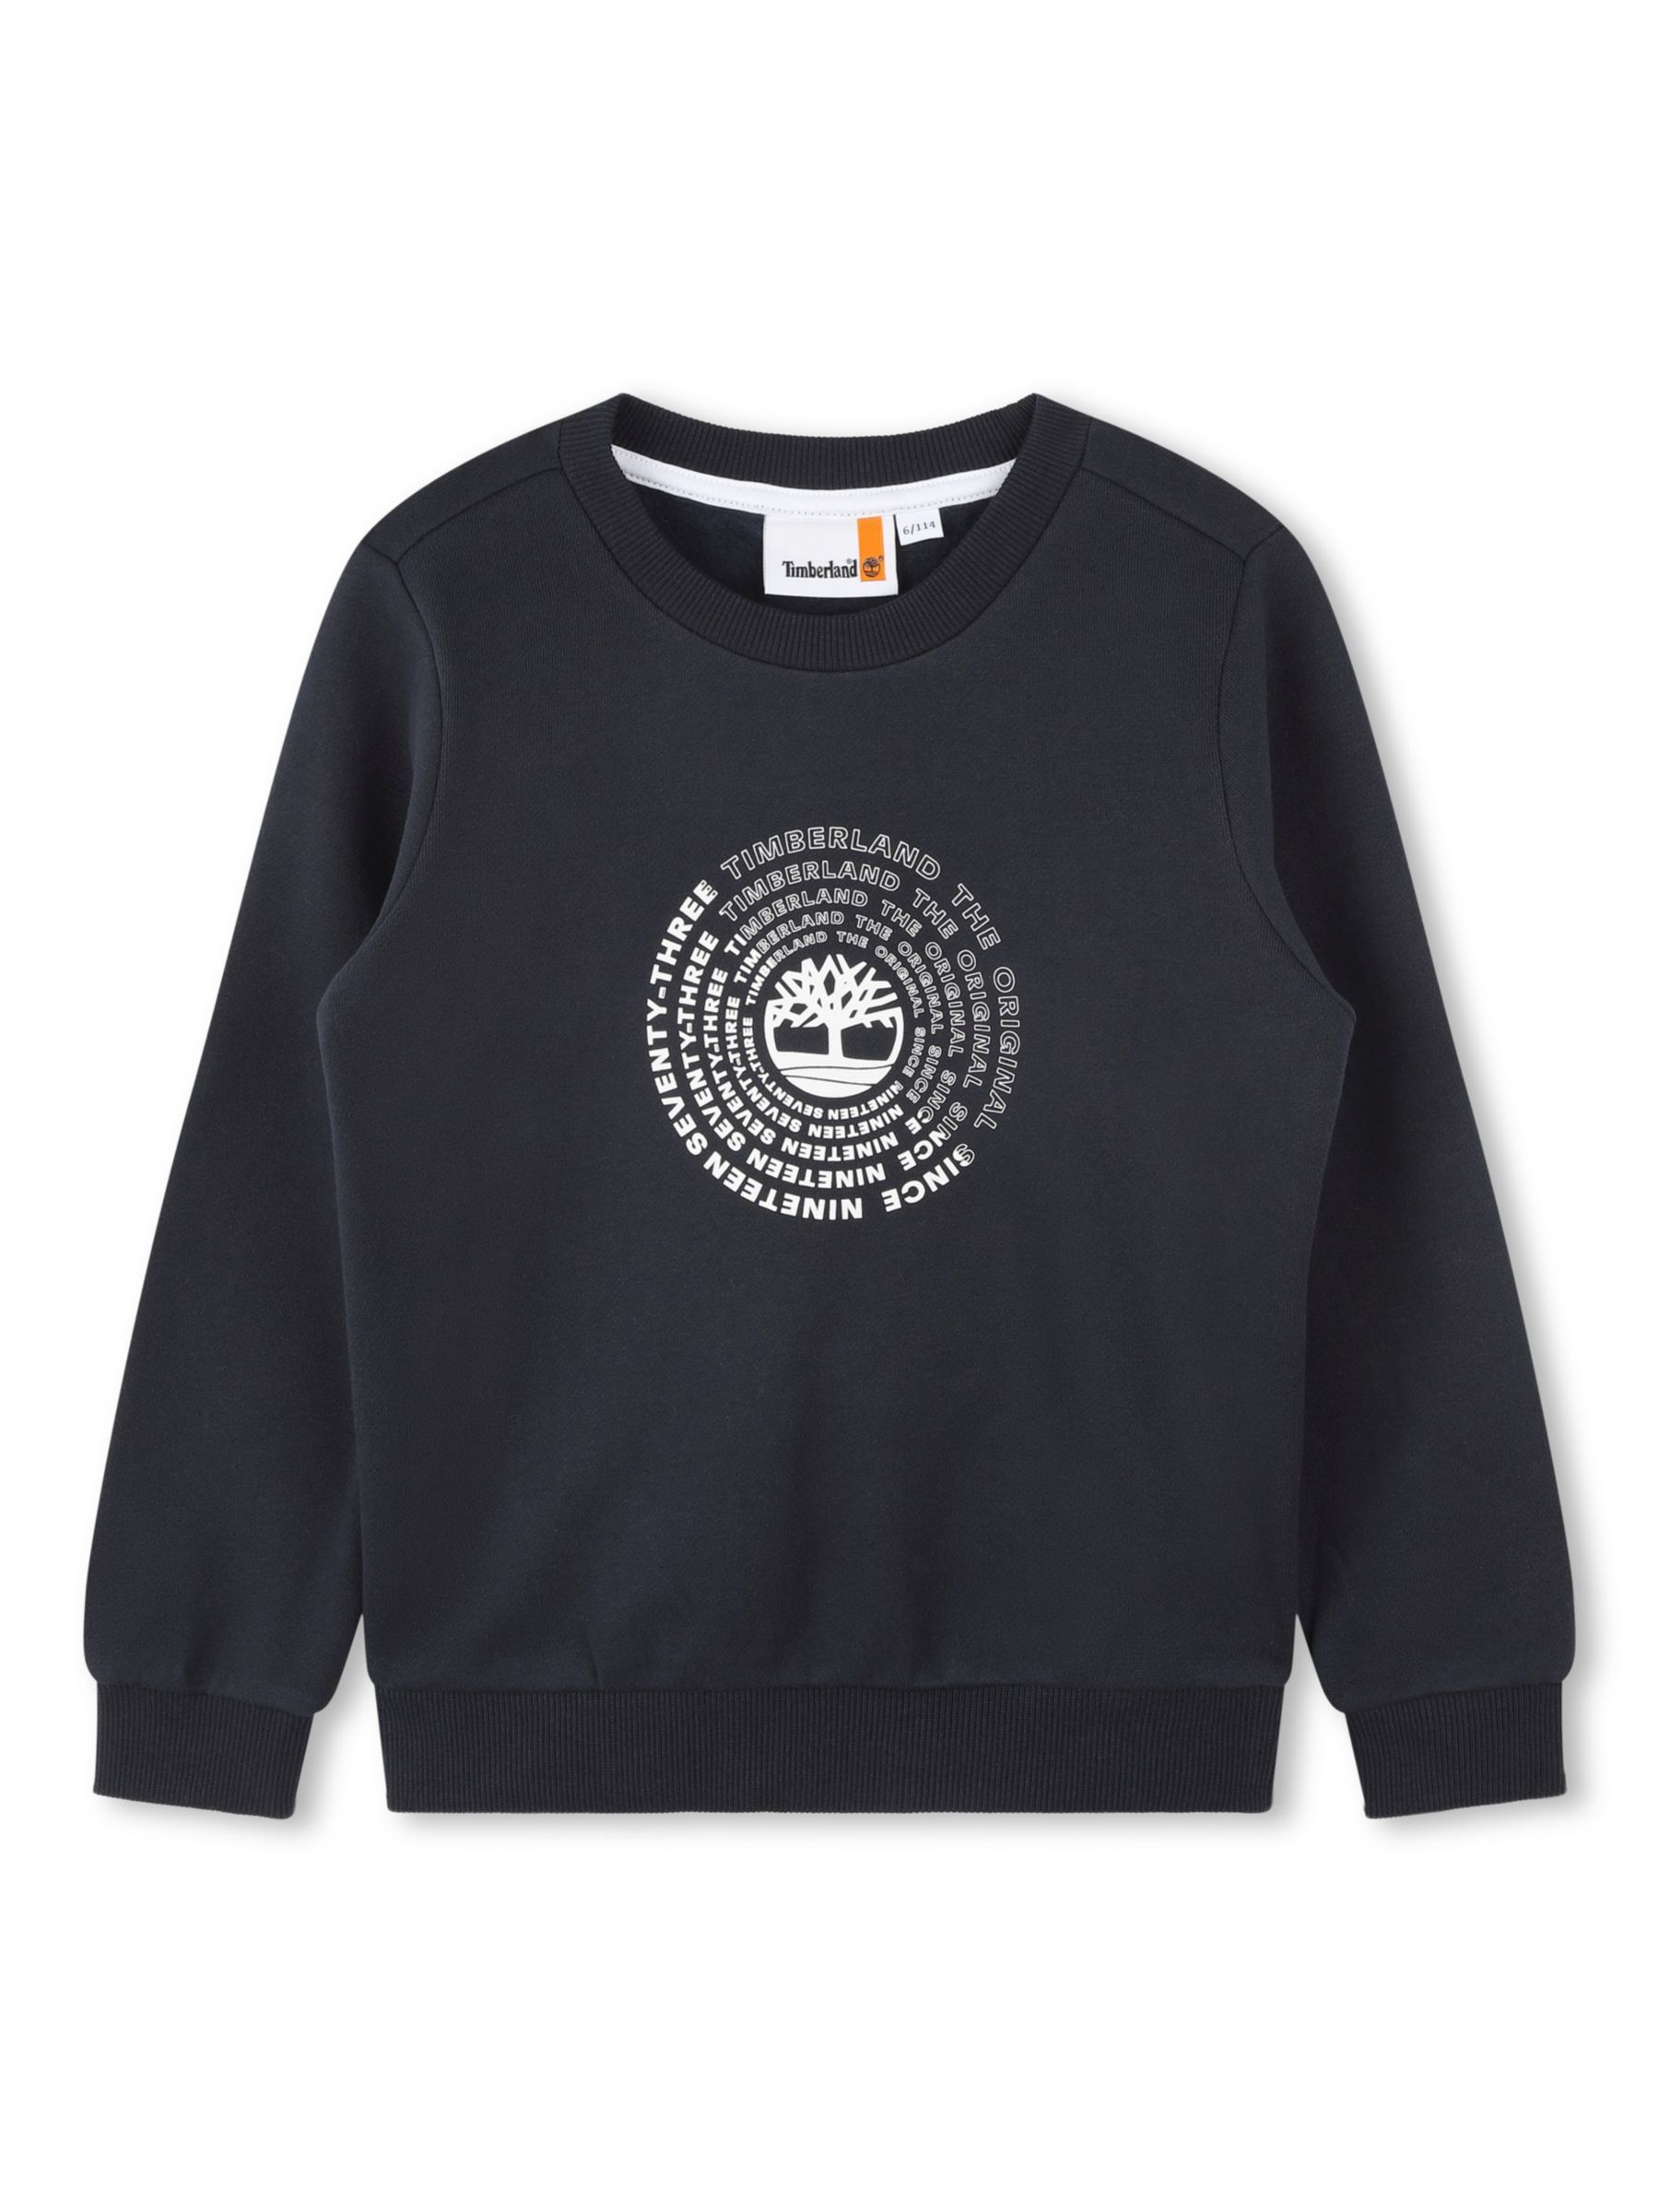 Timberland Kids' Logo Graphic Sweatshirt, Dark Blue, 4 years